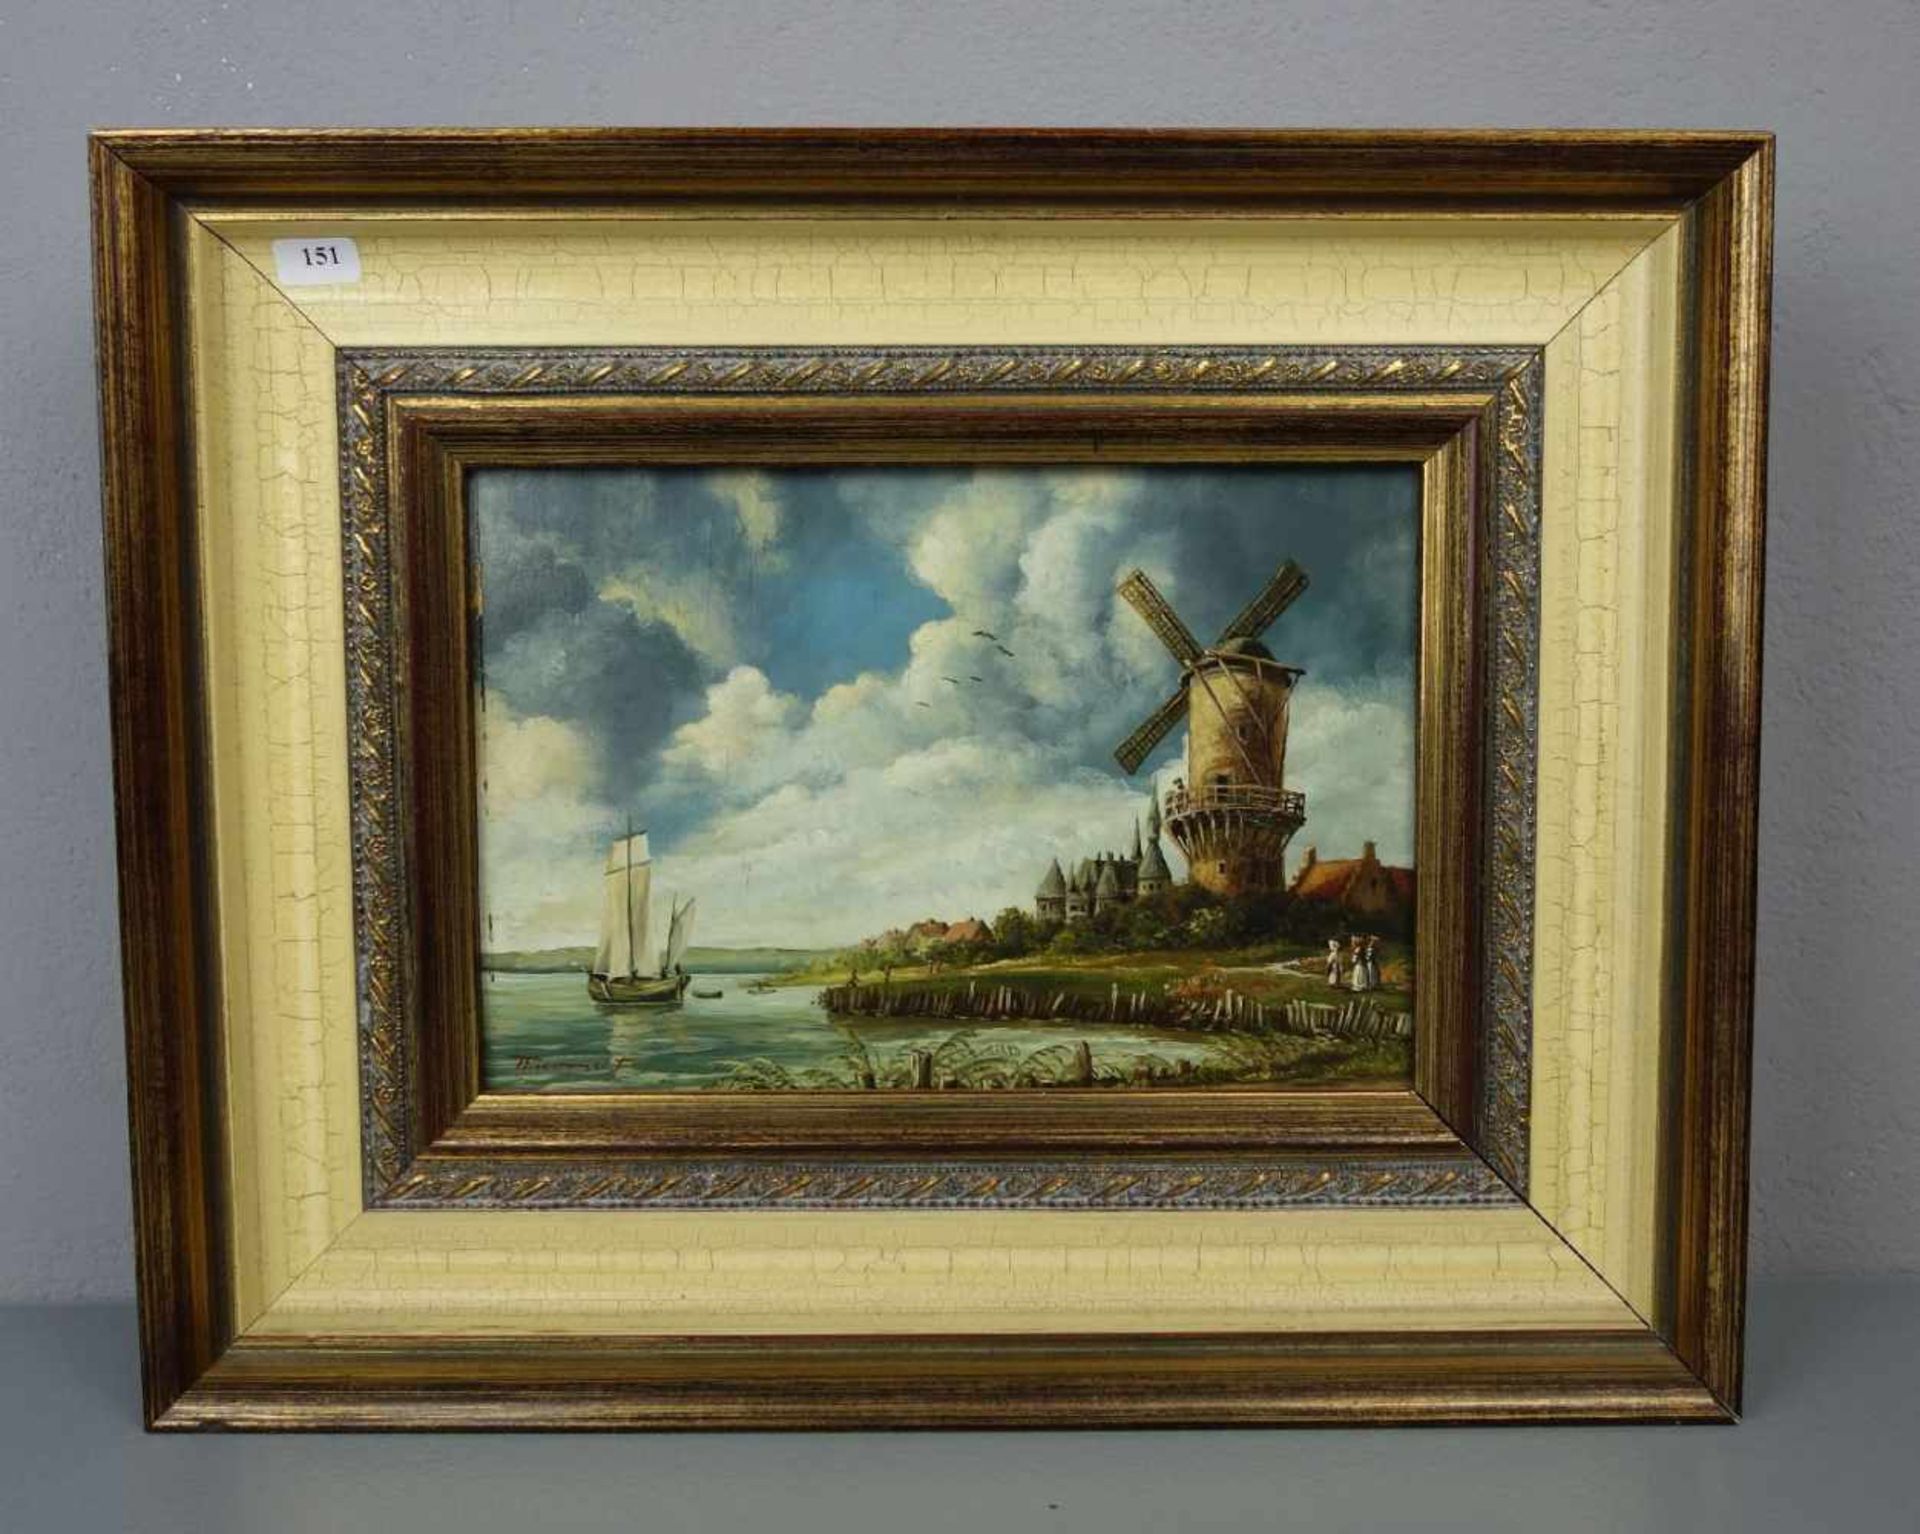 THIEMERT (Landschaftsmaler des 20.)., Gemälde / painting: "Niederländische Landschaft mit Mühle am